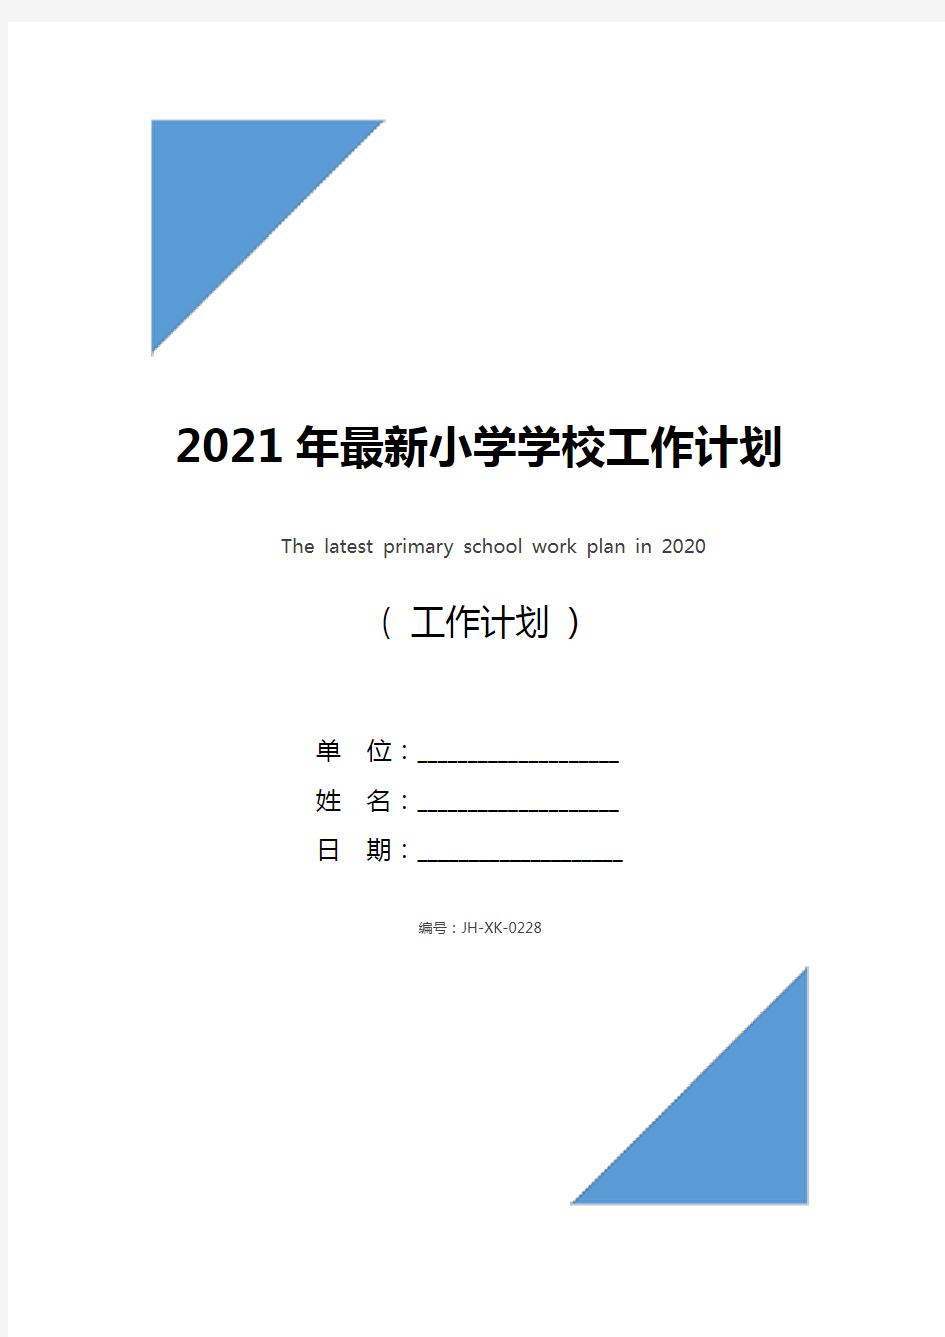 2021年最新小学学校工作计划(最新版)